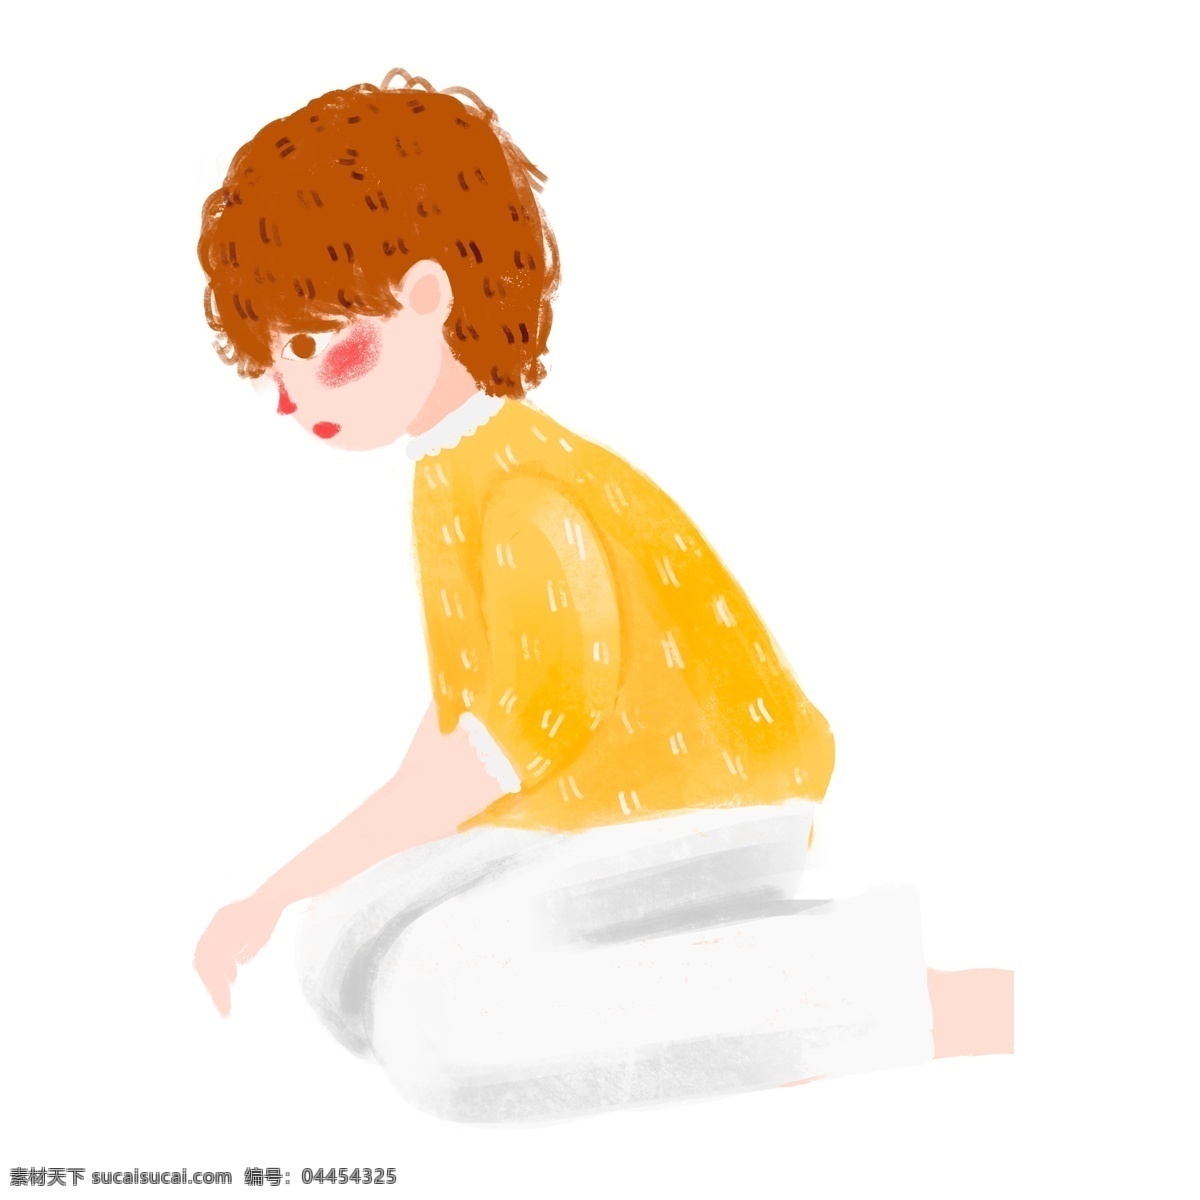 手绘 黄 衣 男孩 形象 人物 可爱风 透明元素 手绘元素 儿童